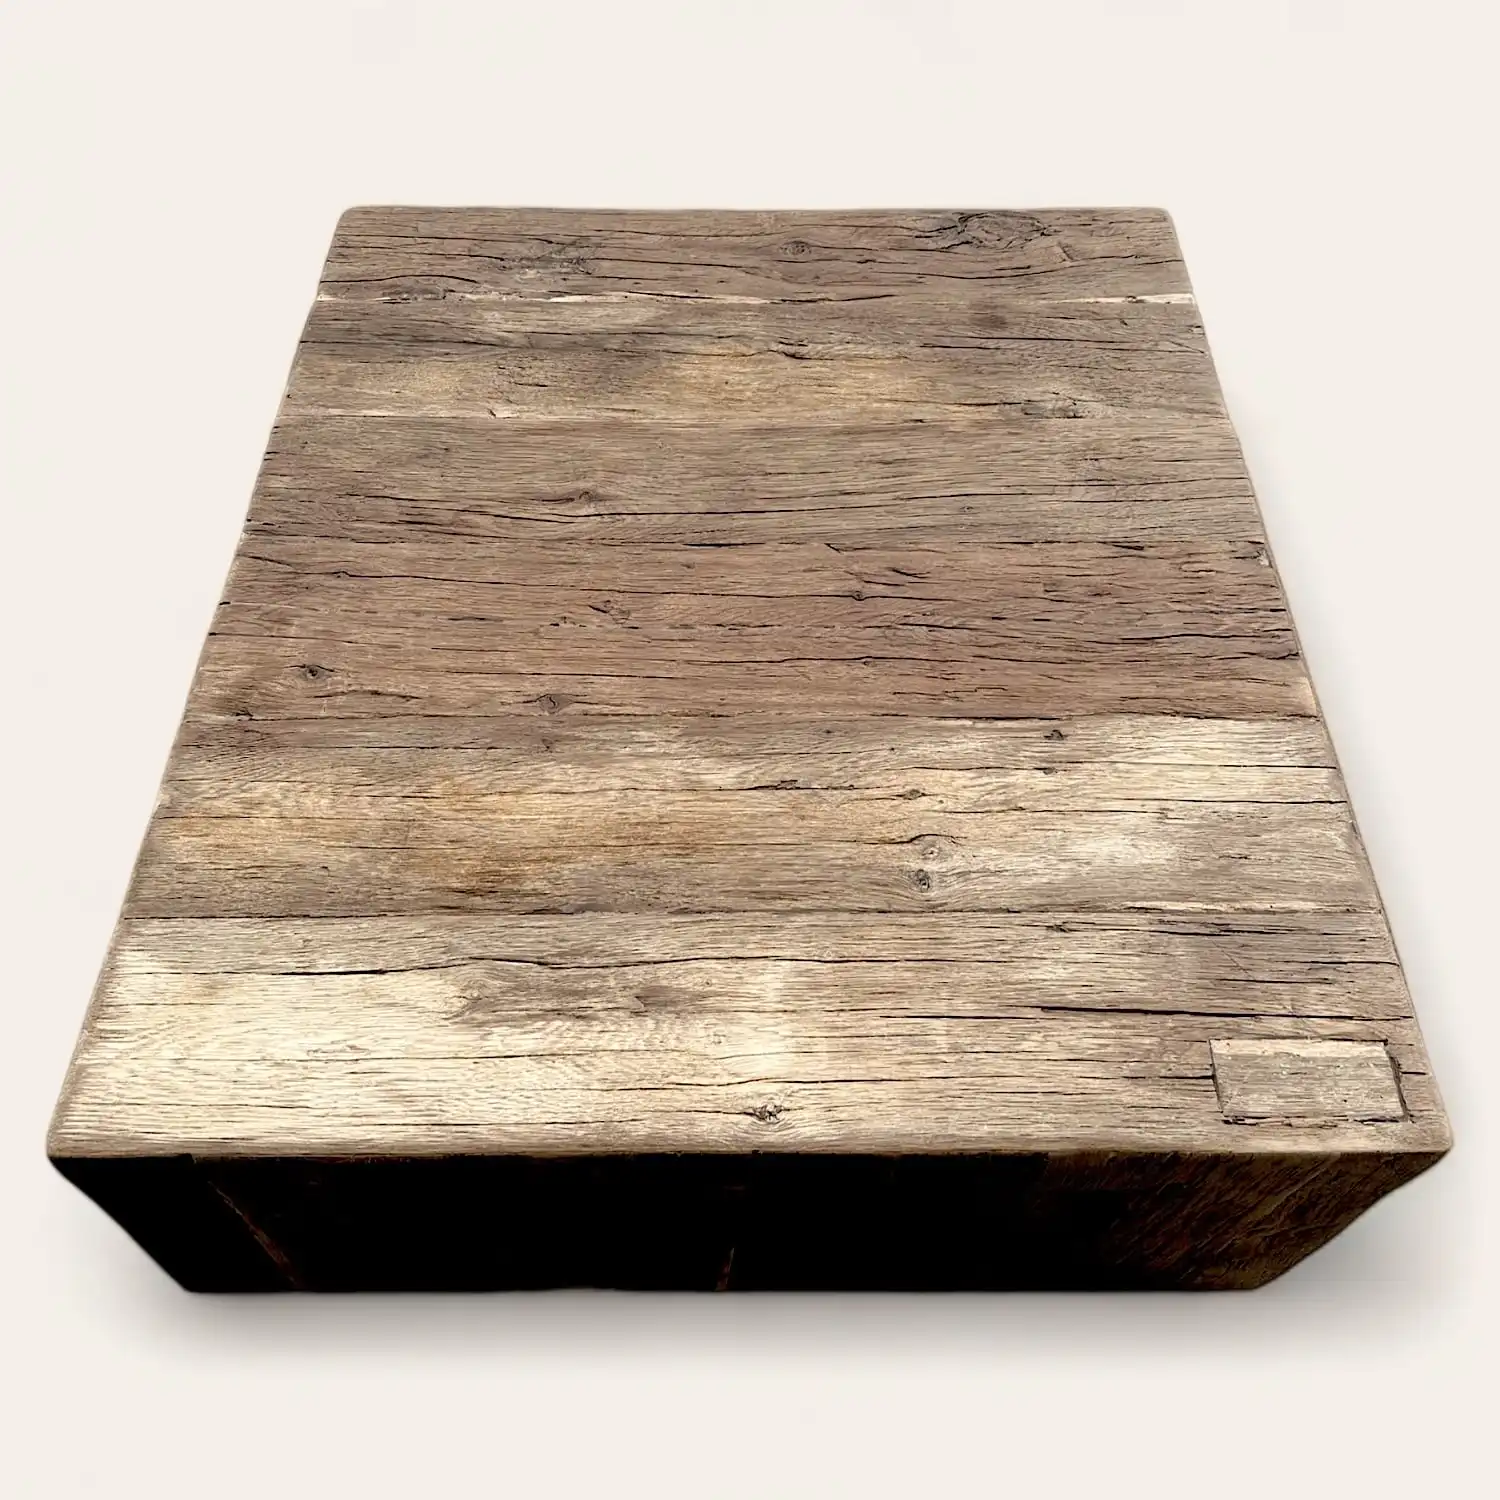  Un objet carré en bois rustique avec un fond blanc. 